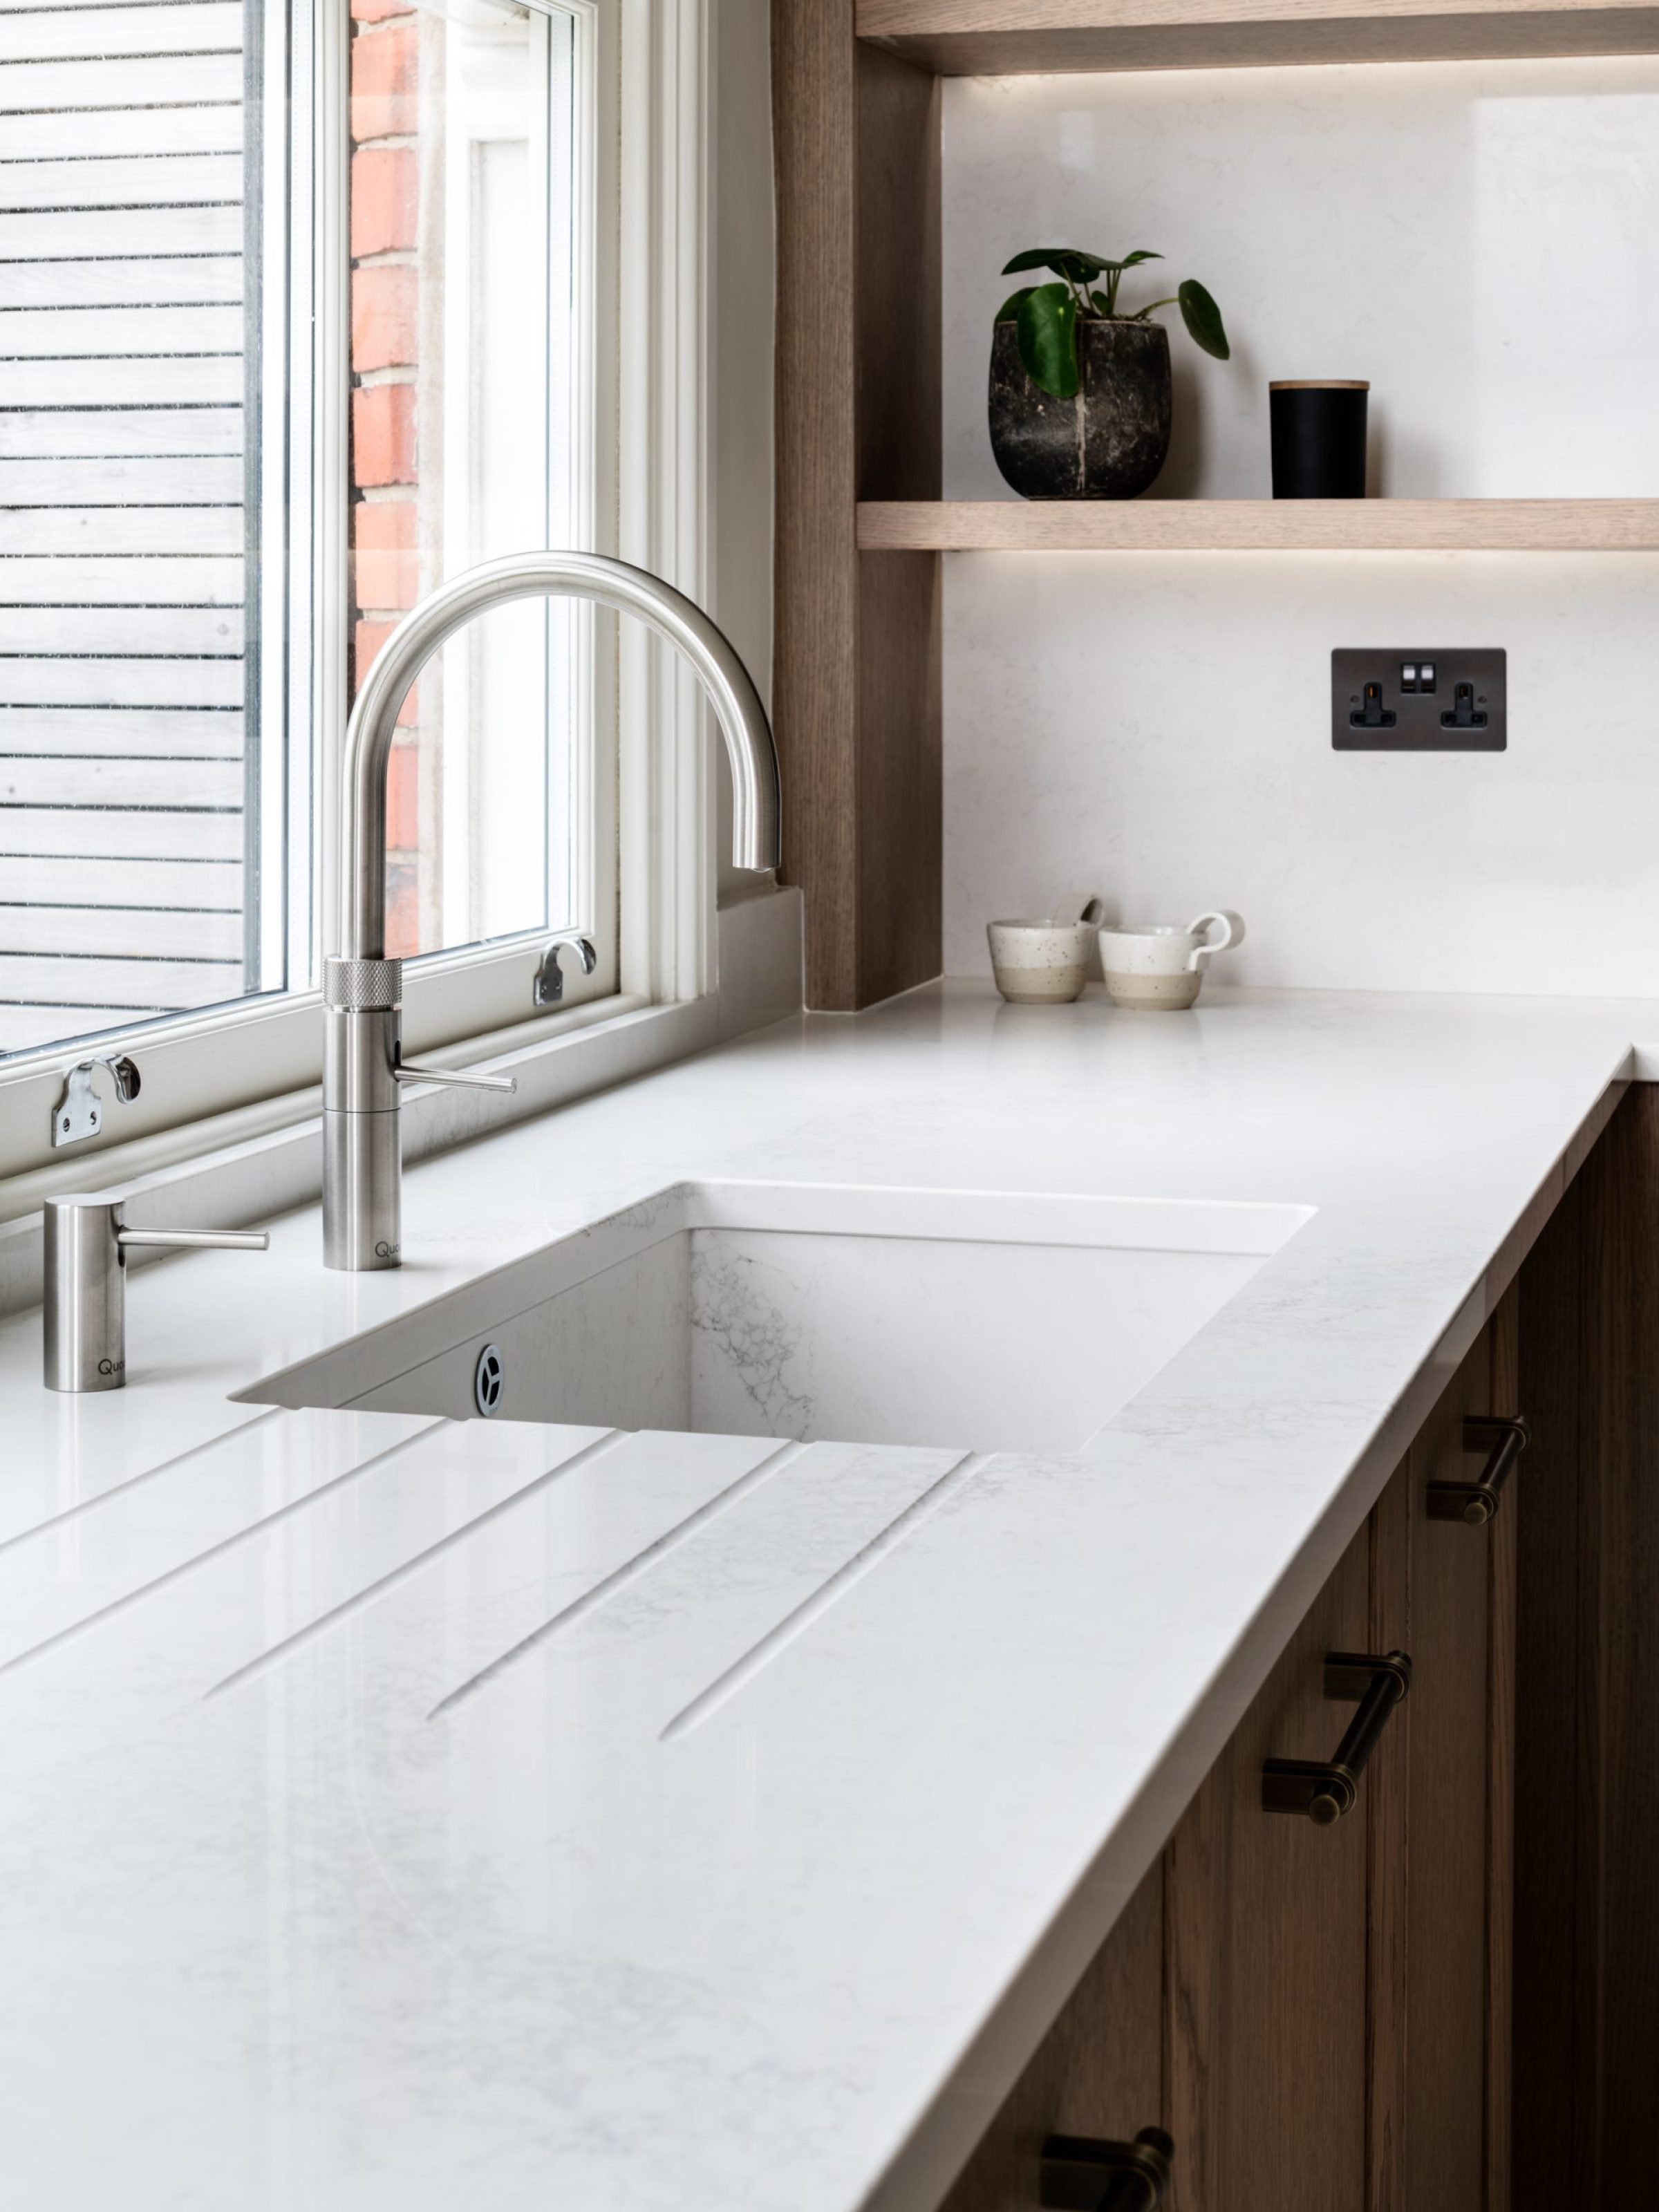 contemporary kitchen sink design